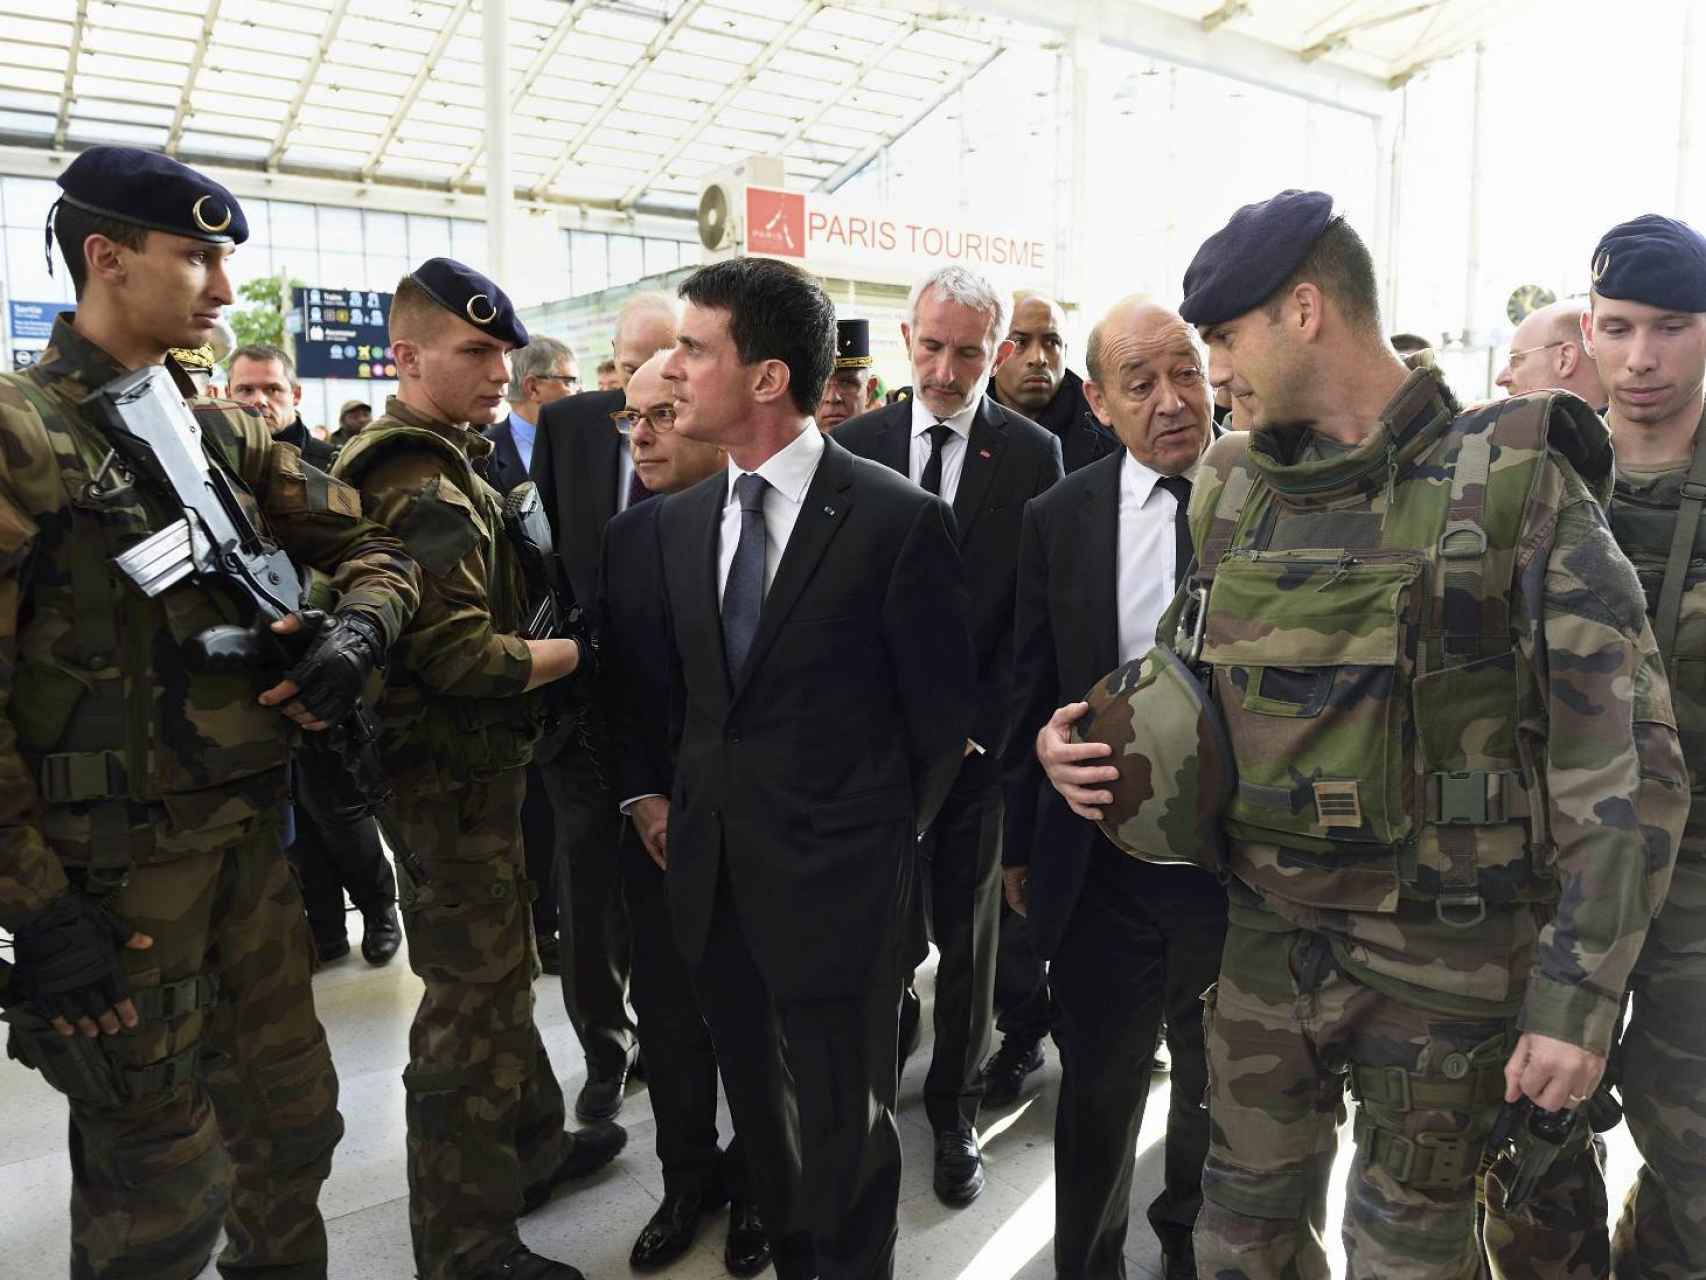 El primer ministro francés Manuel Valls juntoa  militares en París.